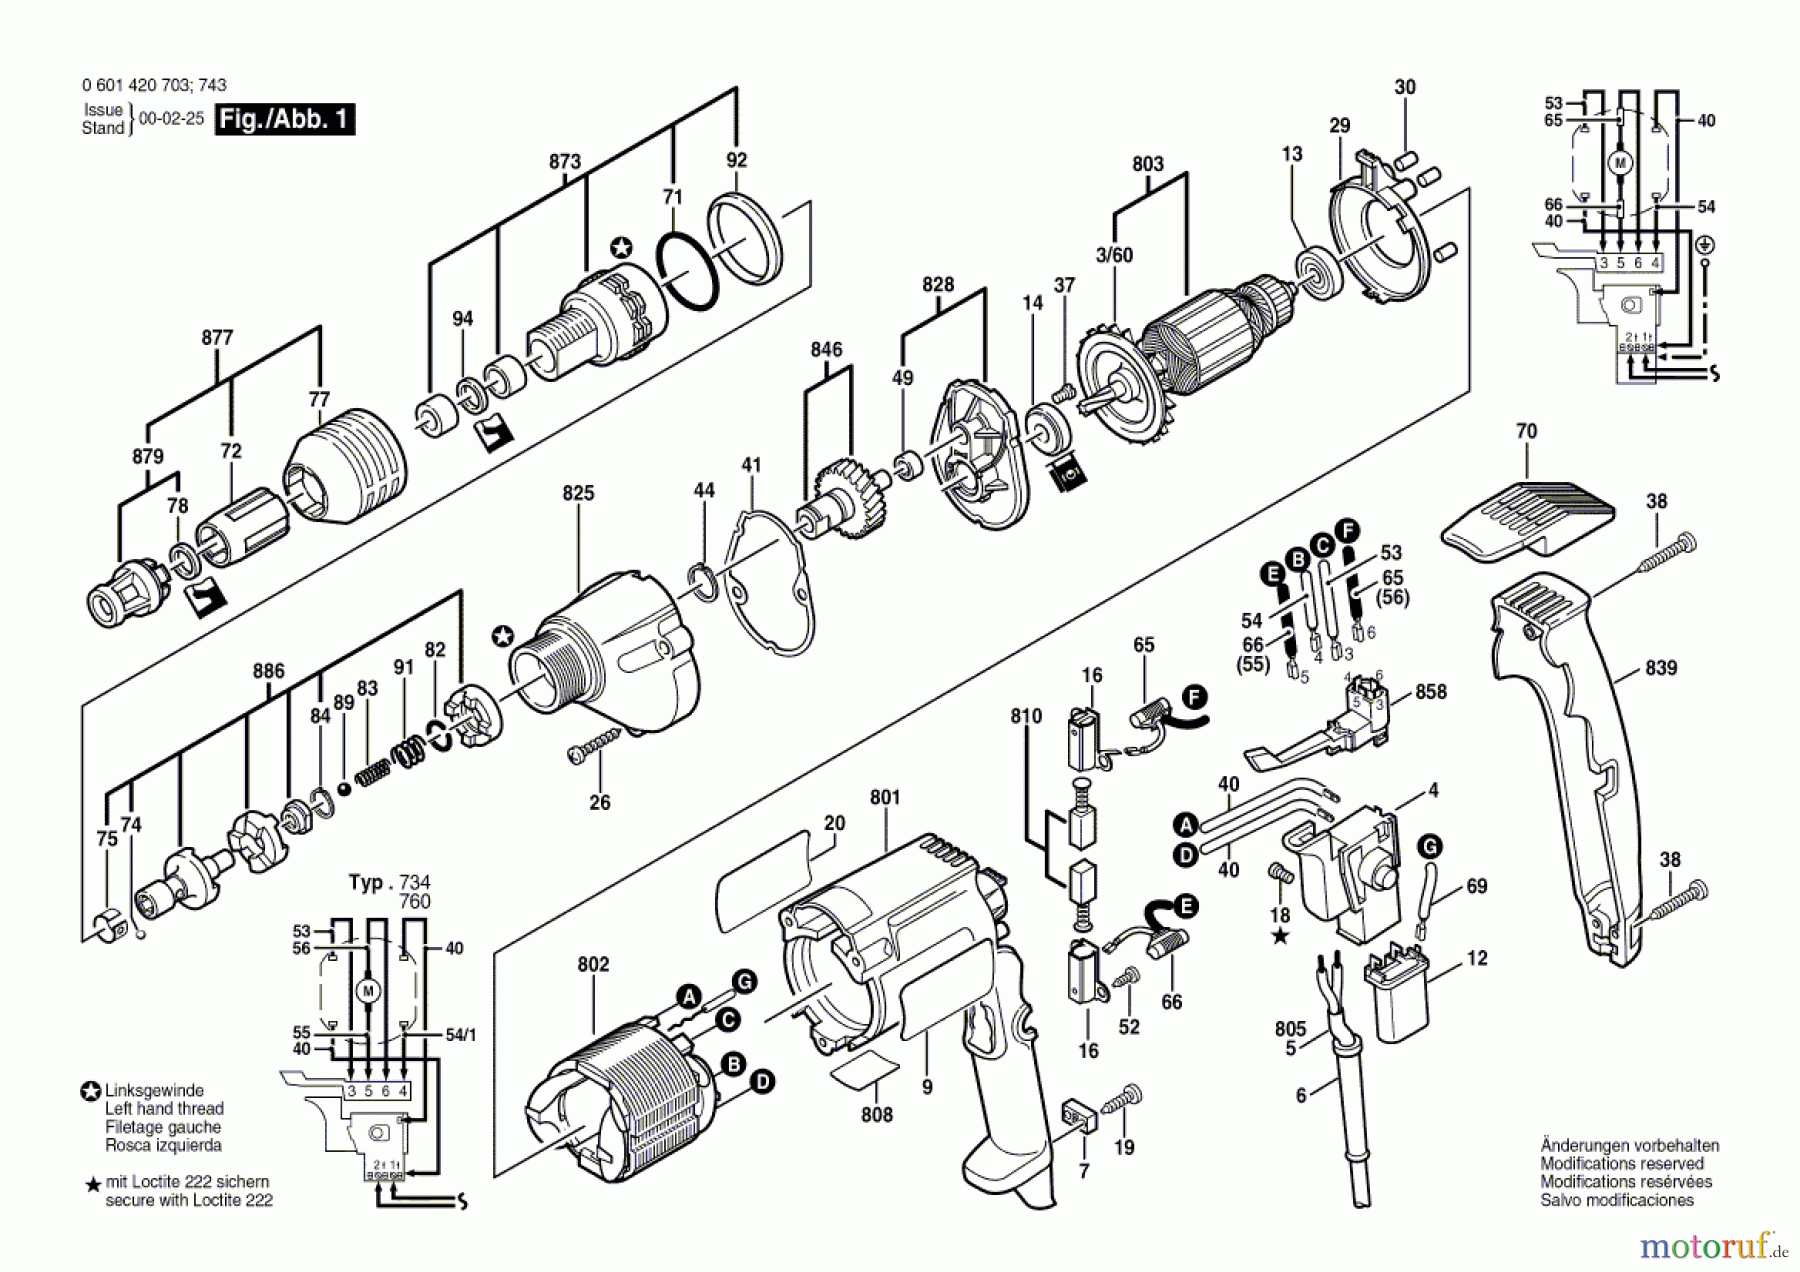  Bosch Werkzeug Bohrschrauber GSR 6-40 TE Seite 1